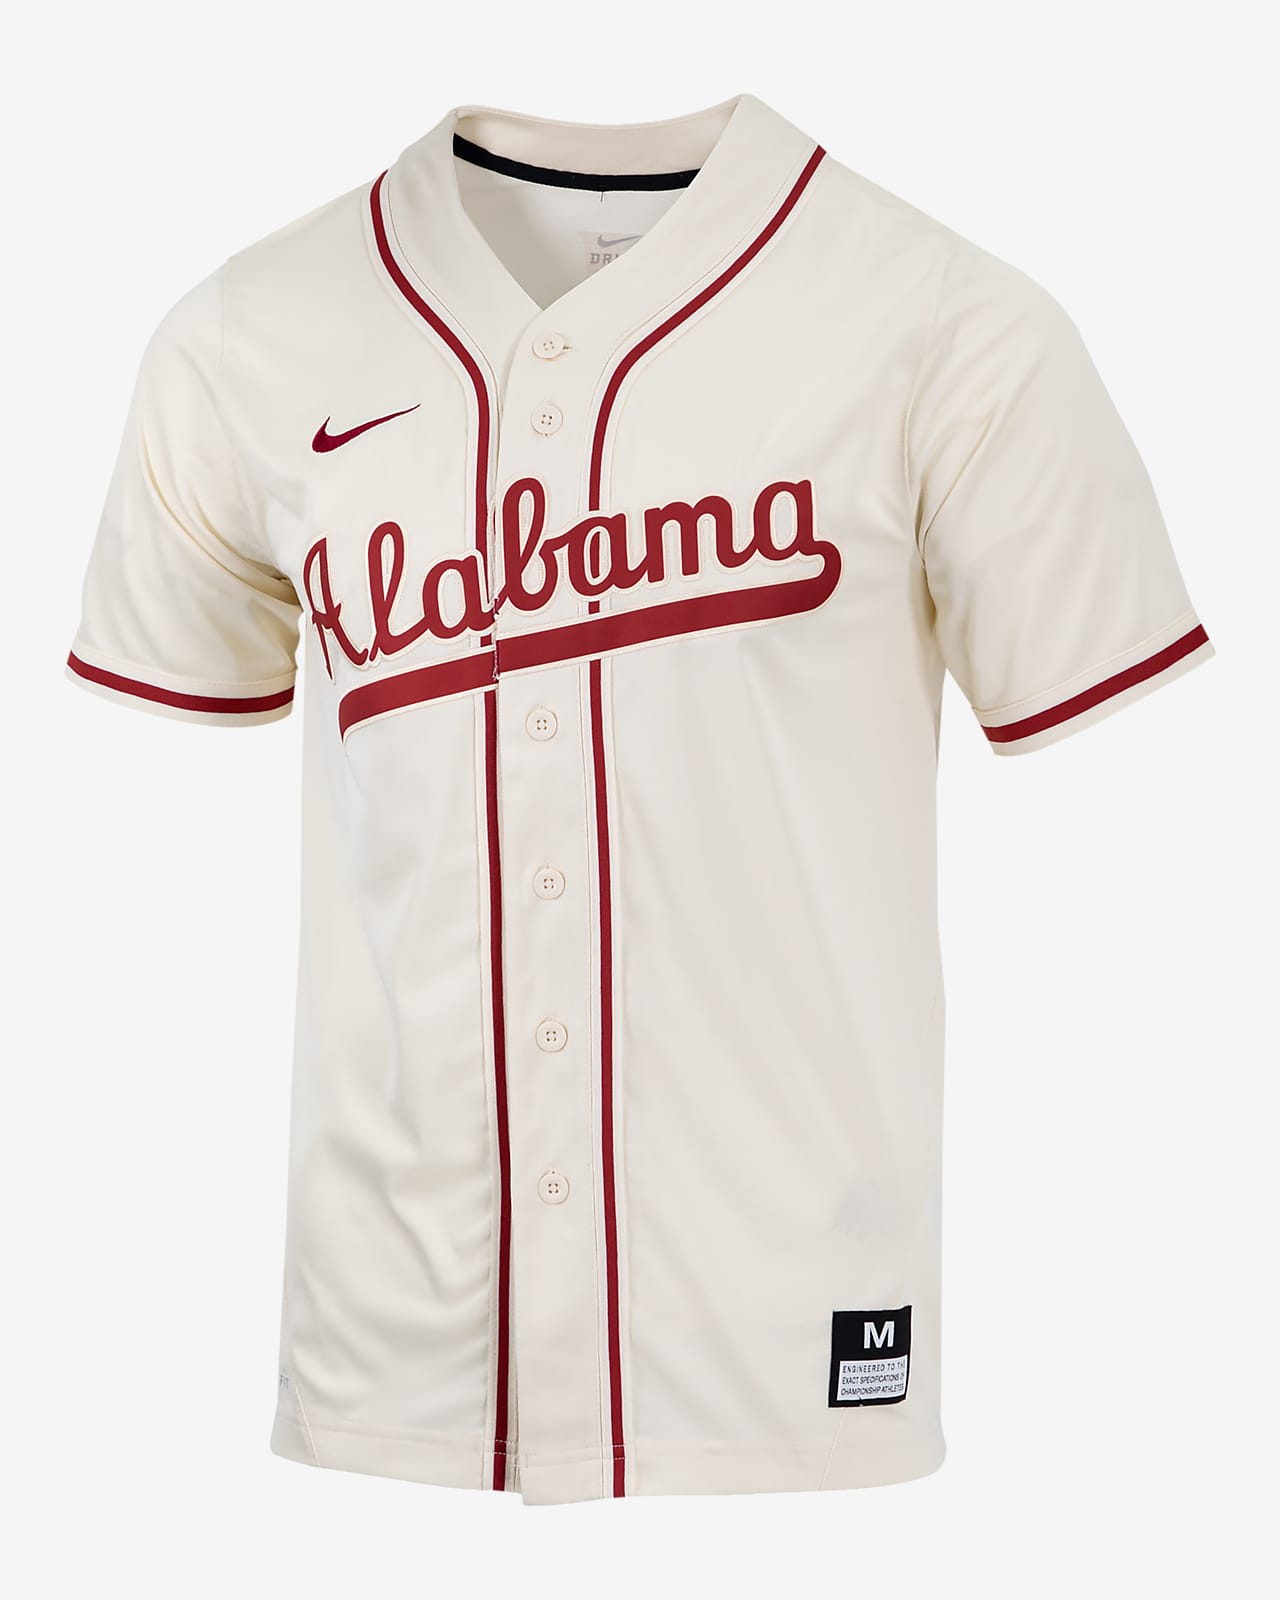 Jersey de béisbol universitario Nike Replica para hombre Alabama